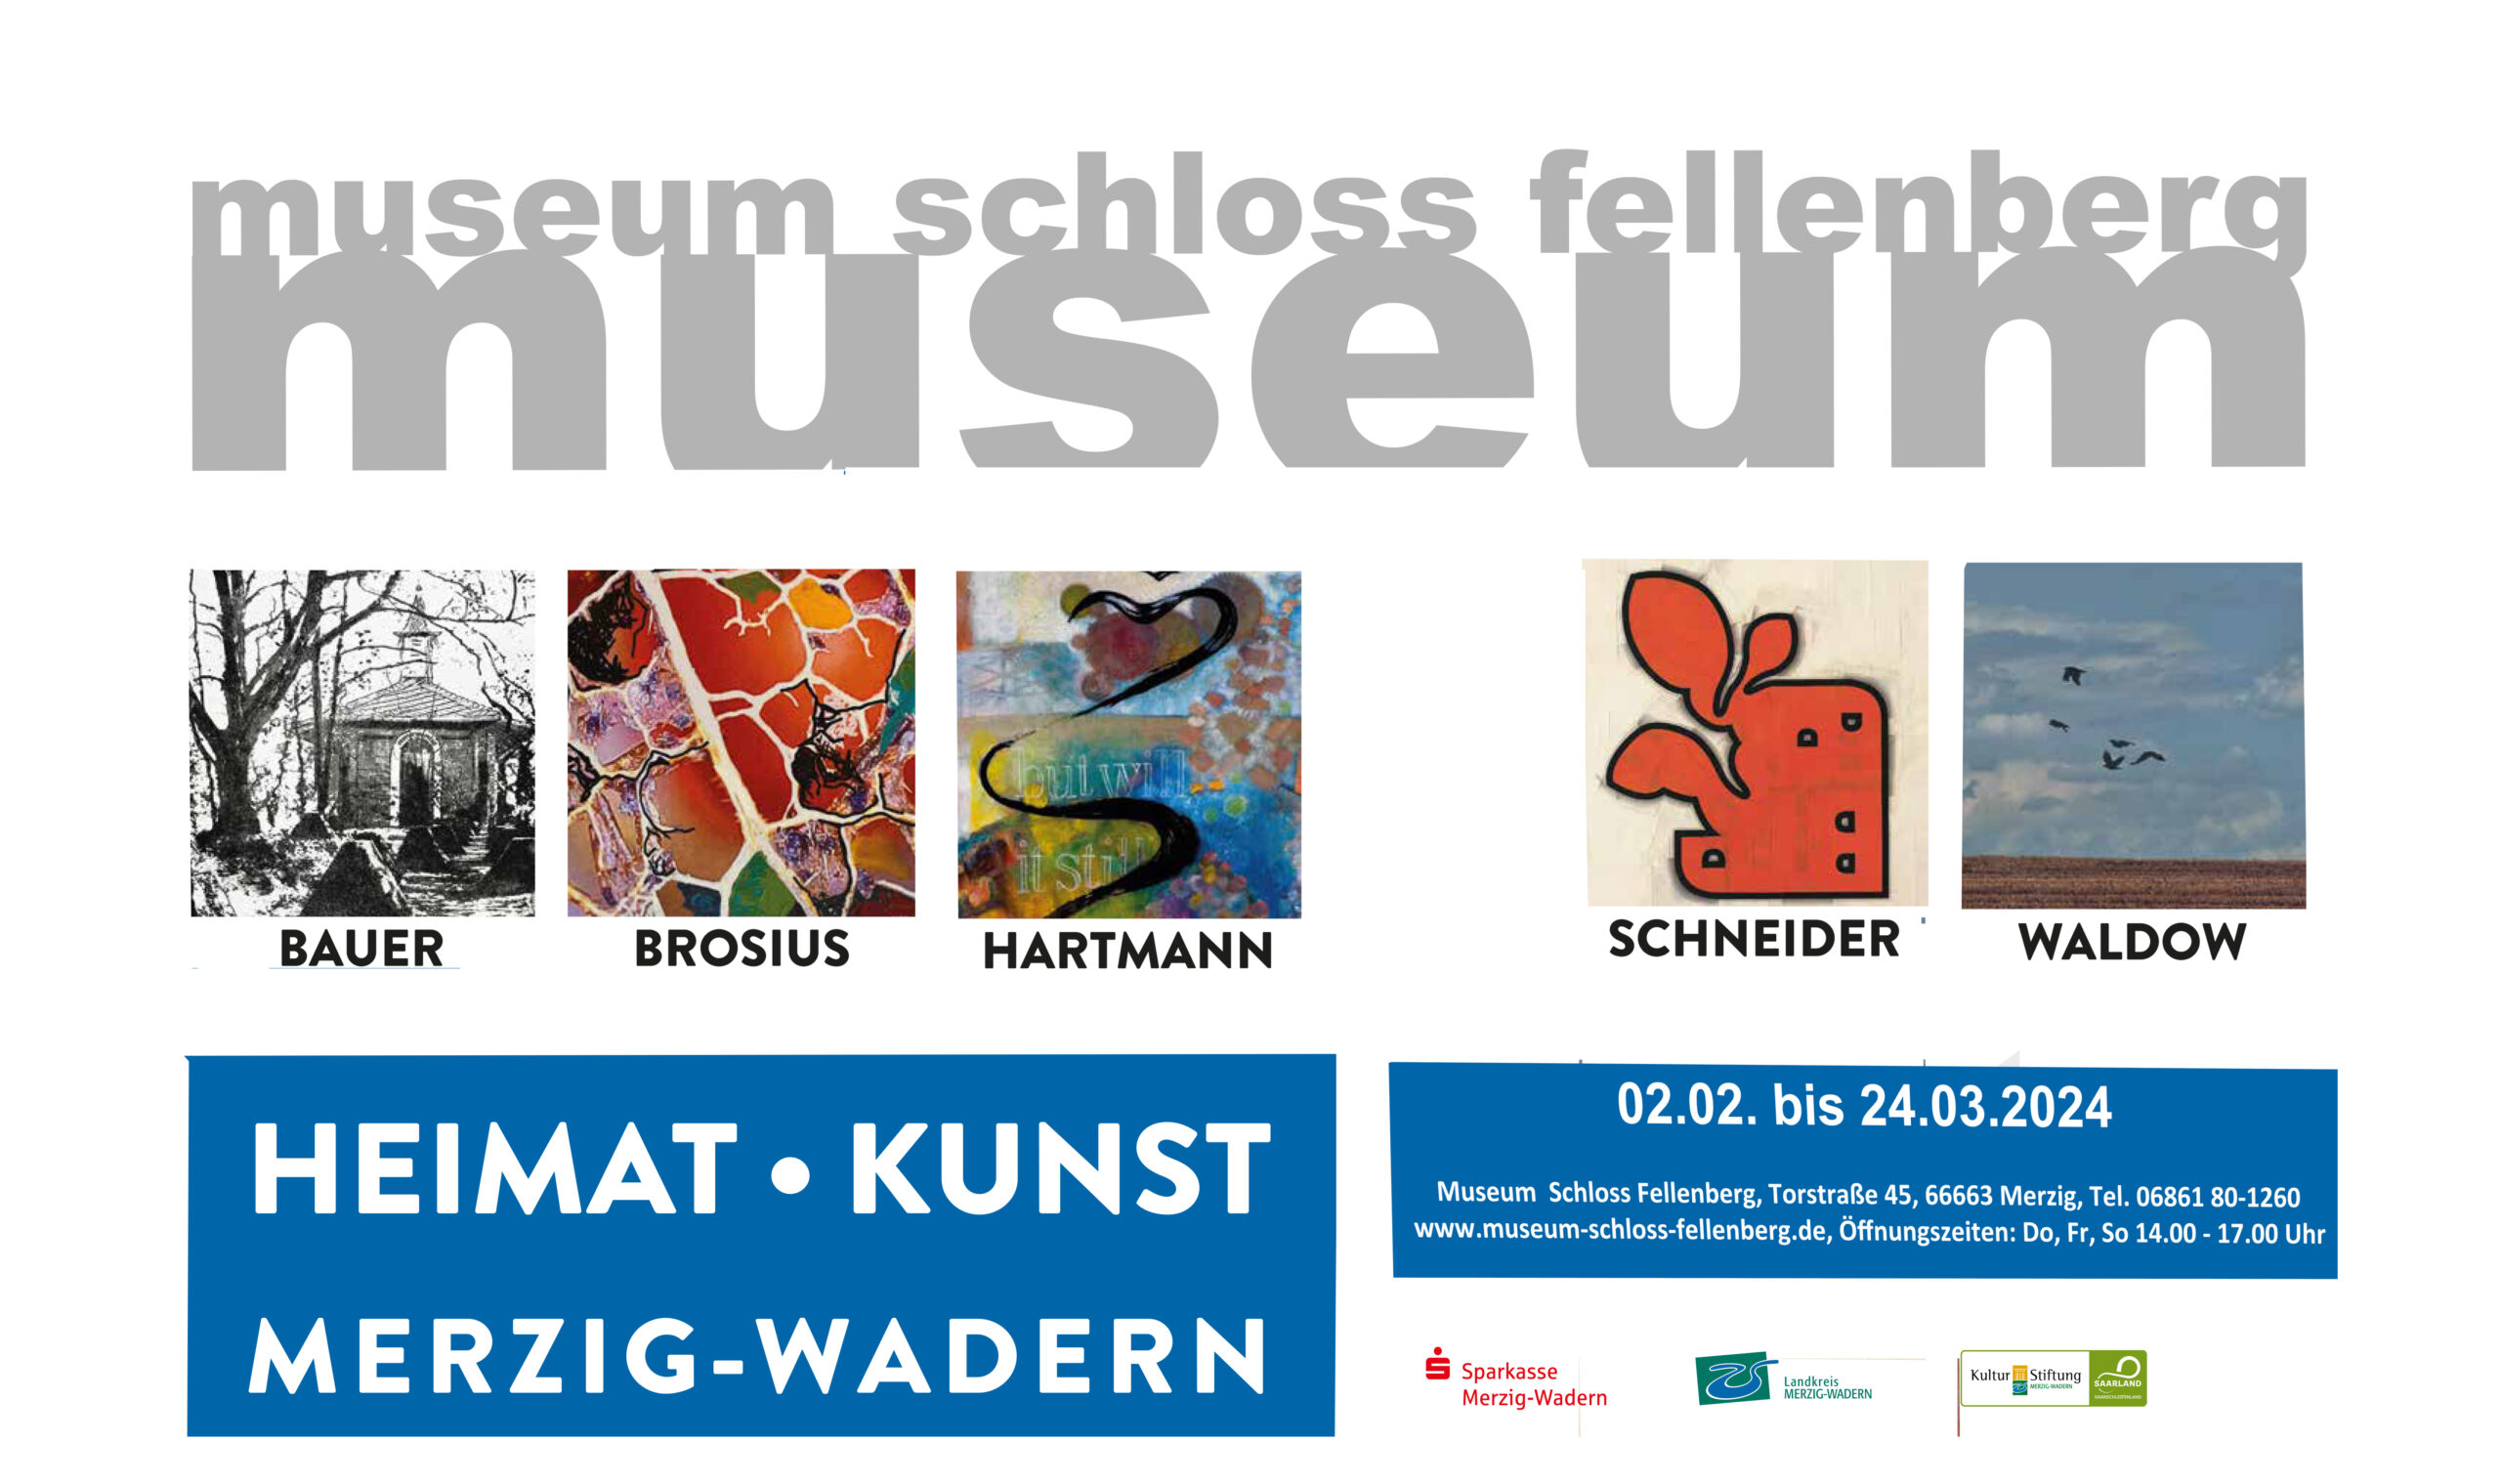 Einladung zur Ausstellung „HEIMAT – KUNST“ im Museum Schloss Fellenberg